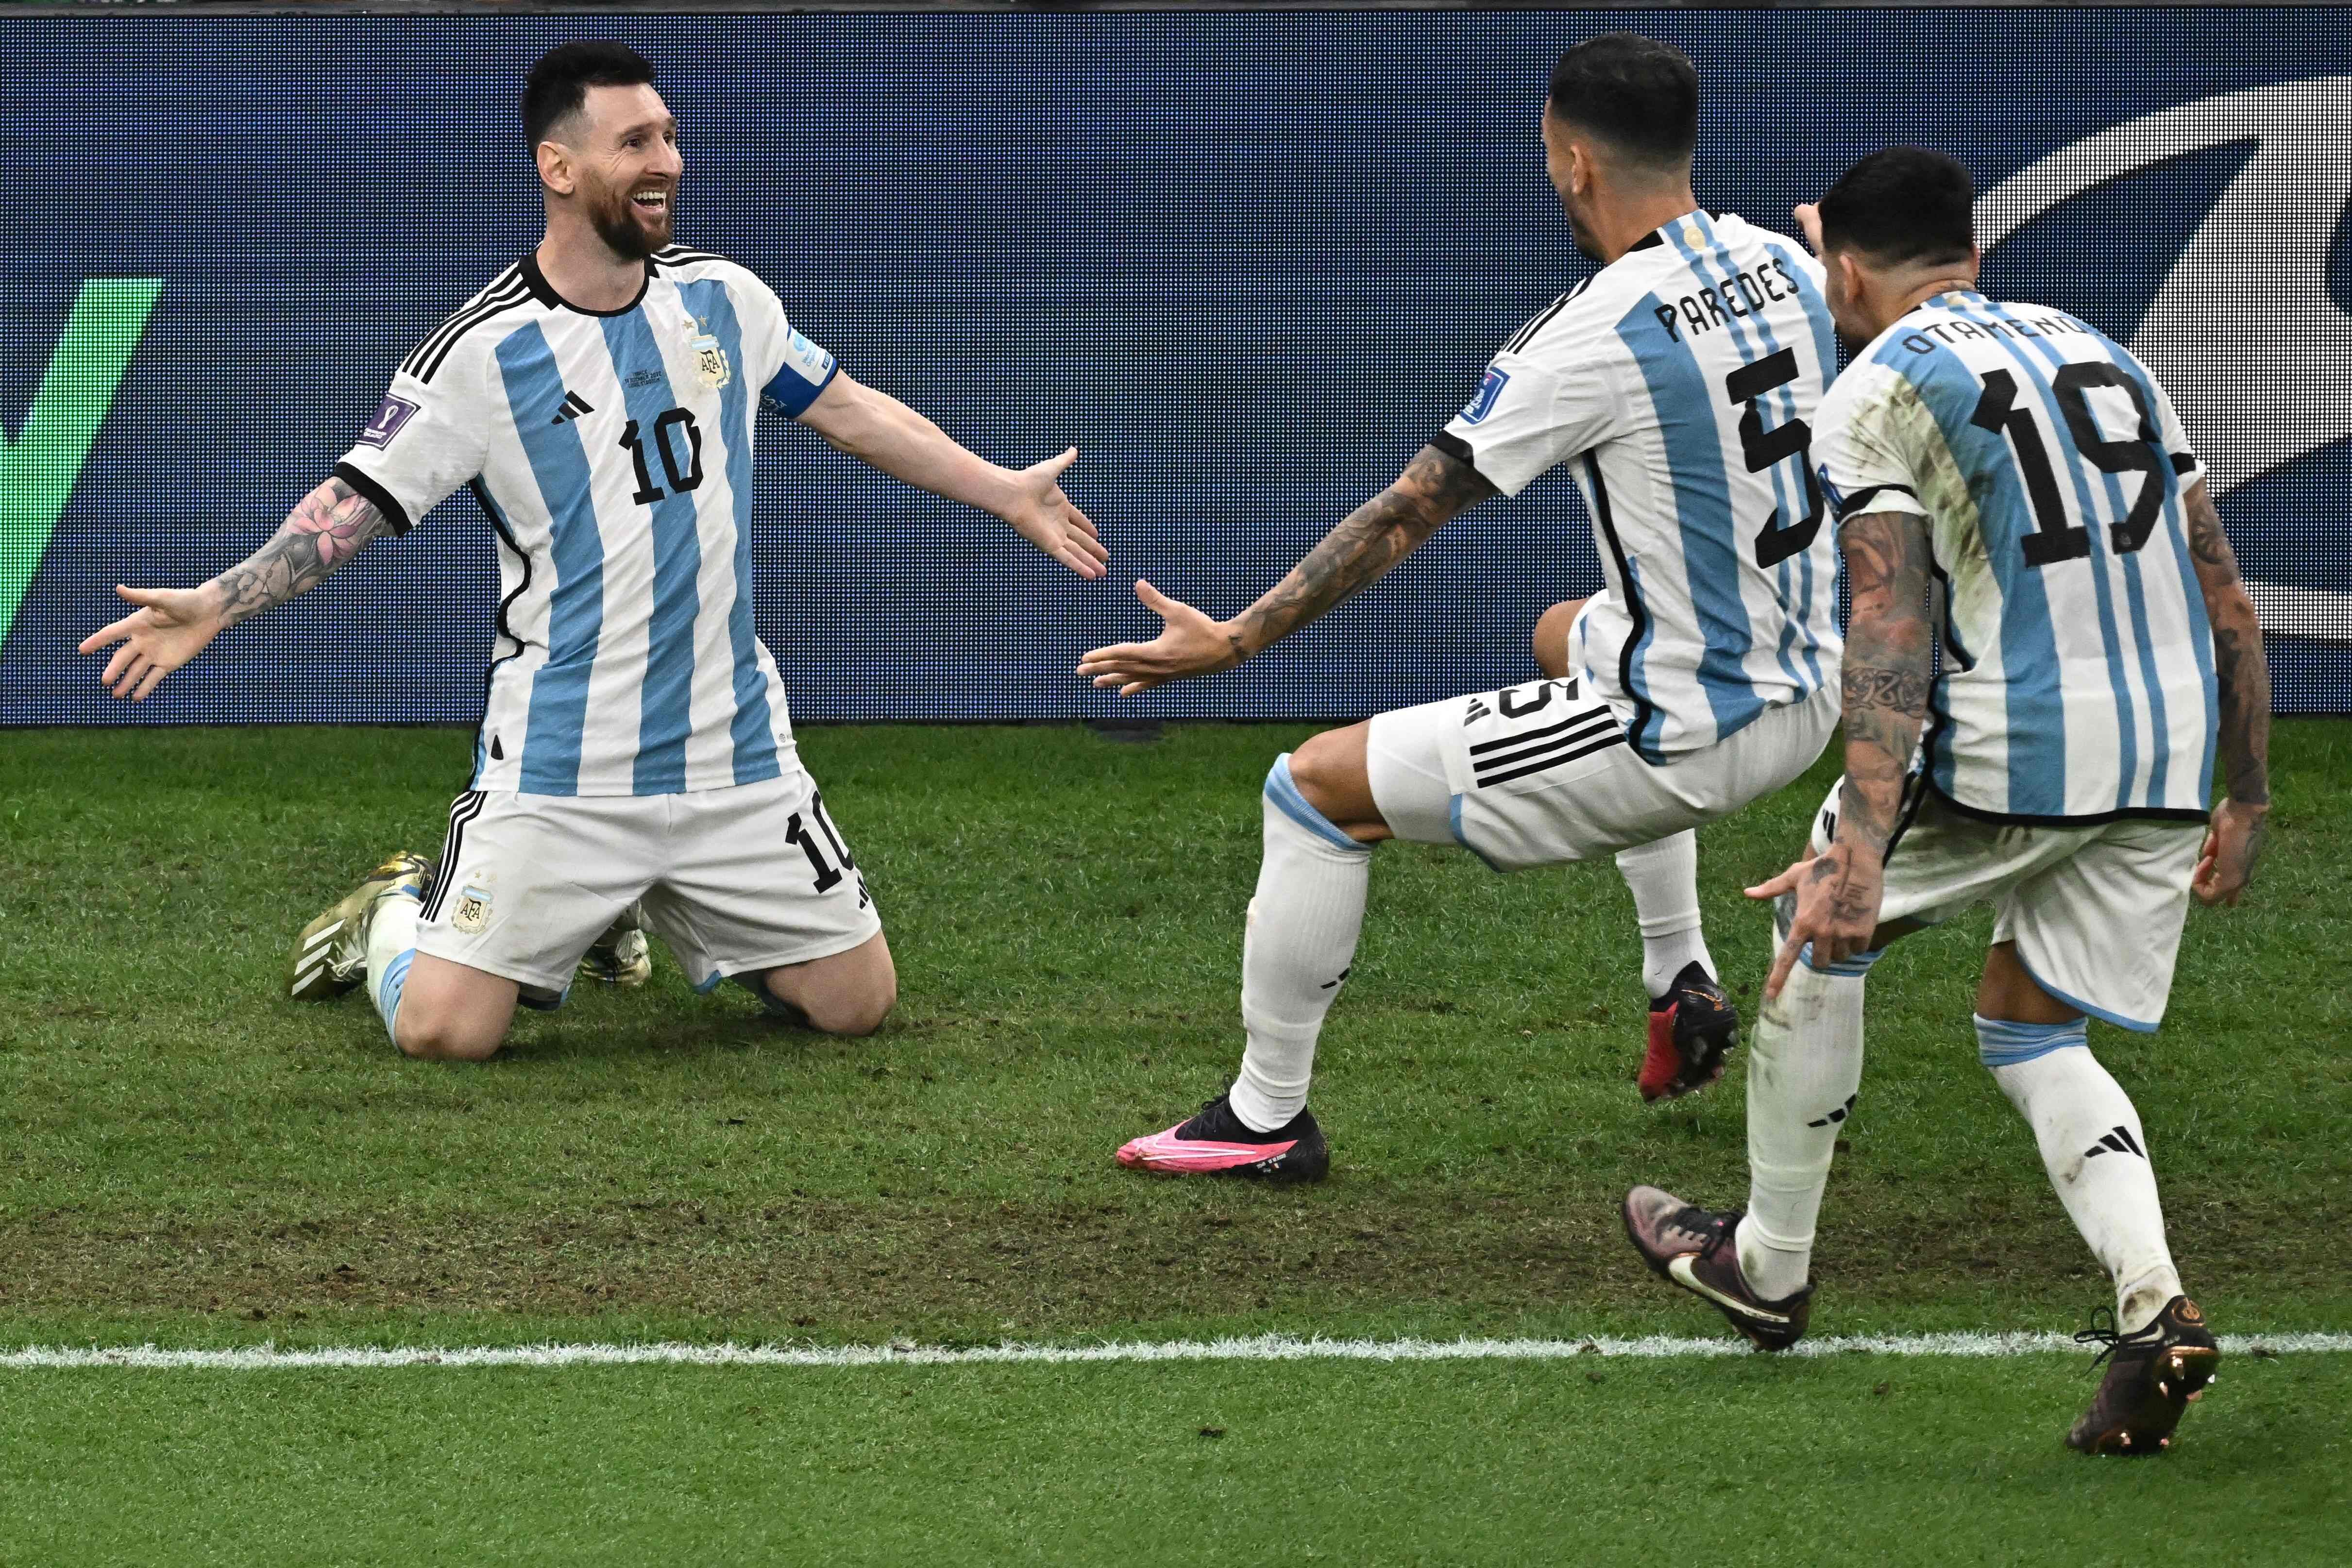 El delantero número 10 de Argentina, Lionel Messi, celebra con sus compañeros después de marcar el tercer gol de su equipo durante el partido de fútbol de la final de la Copa Mundial de Qatar 2022 entre Argentina y Francia en el Estadio Lusail en Lusail, al norte de Doha, el 18 de diciembre de 2022.